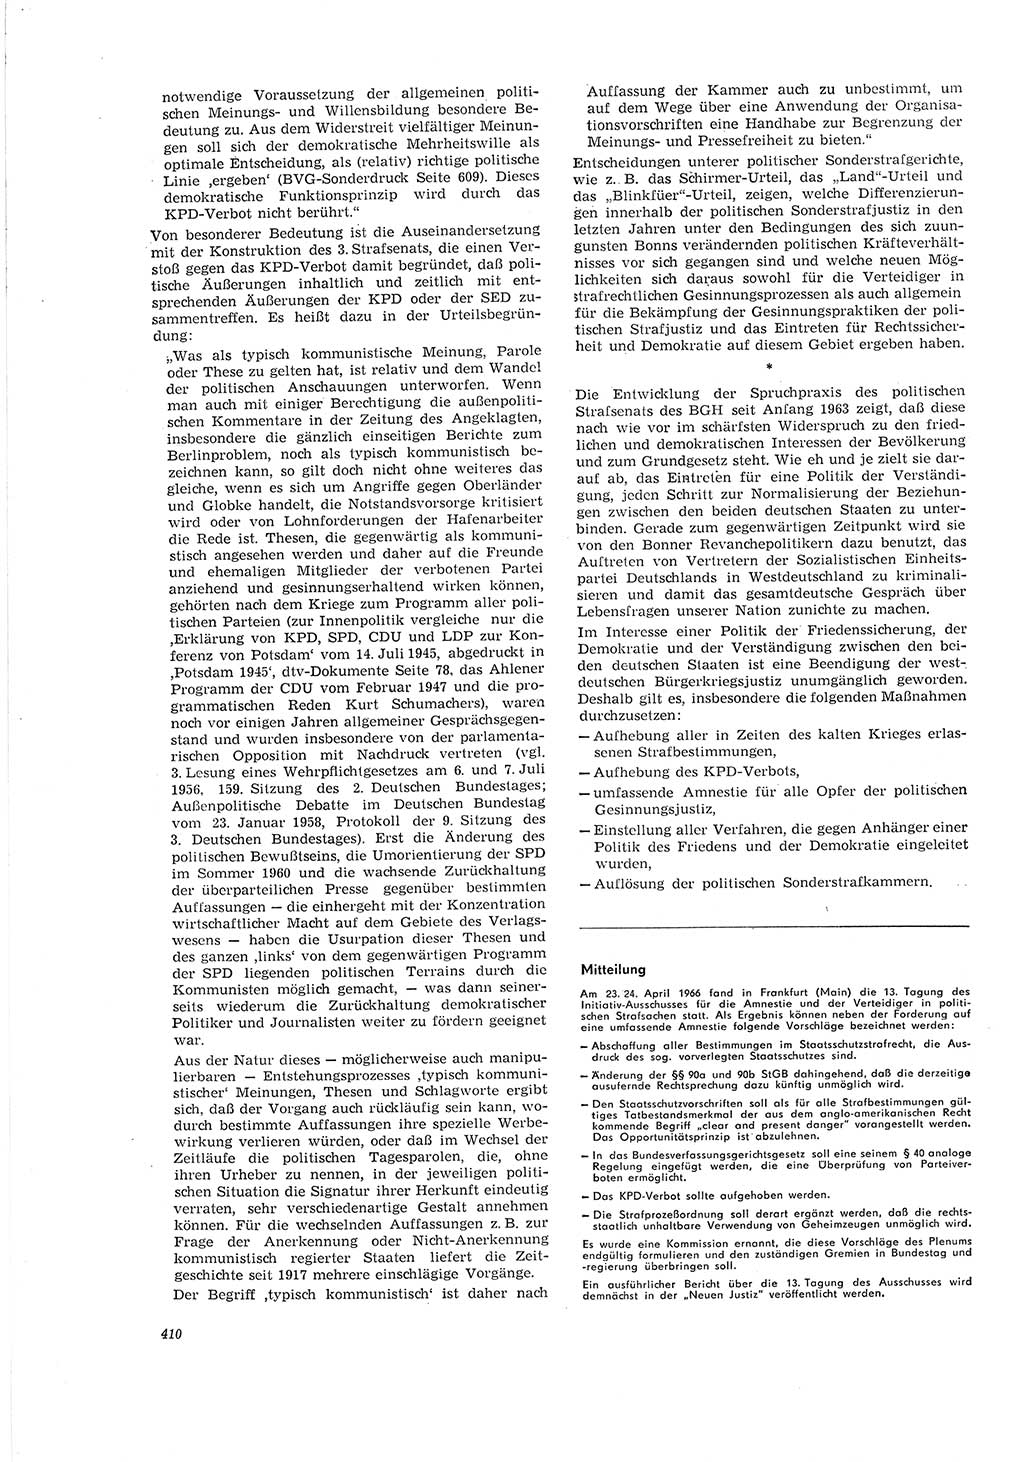 Neue Justiz (NJ), Zeitschrift für Recht und Rechtswissenschaft [Deutsche Demokratische Republik (DDR)], 20. Jahrgang 1966, Seite 410 (NJ DDR 1966, S. 410)